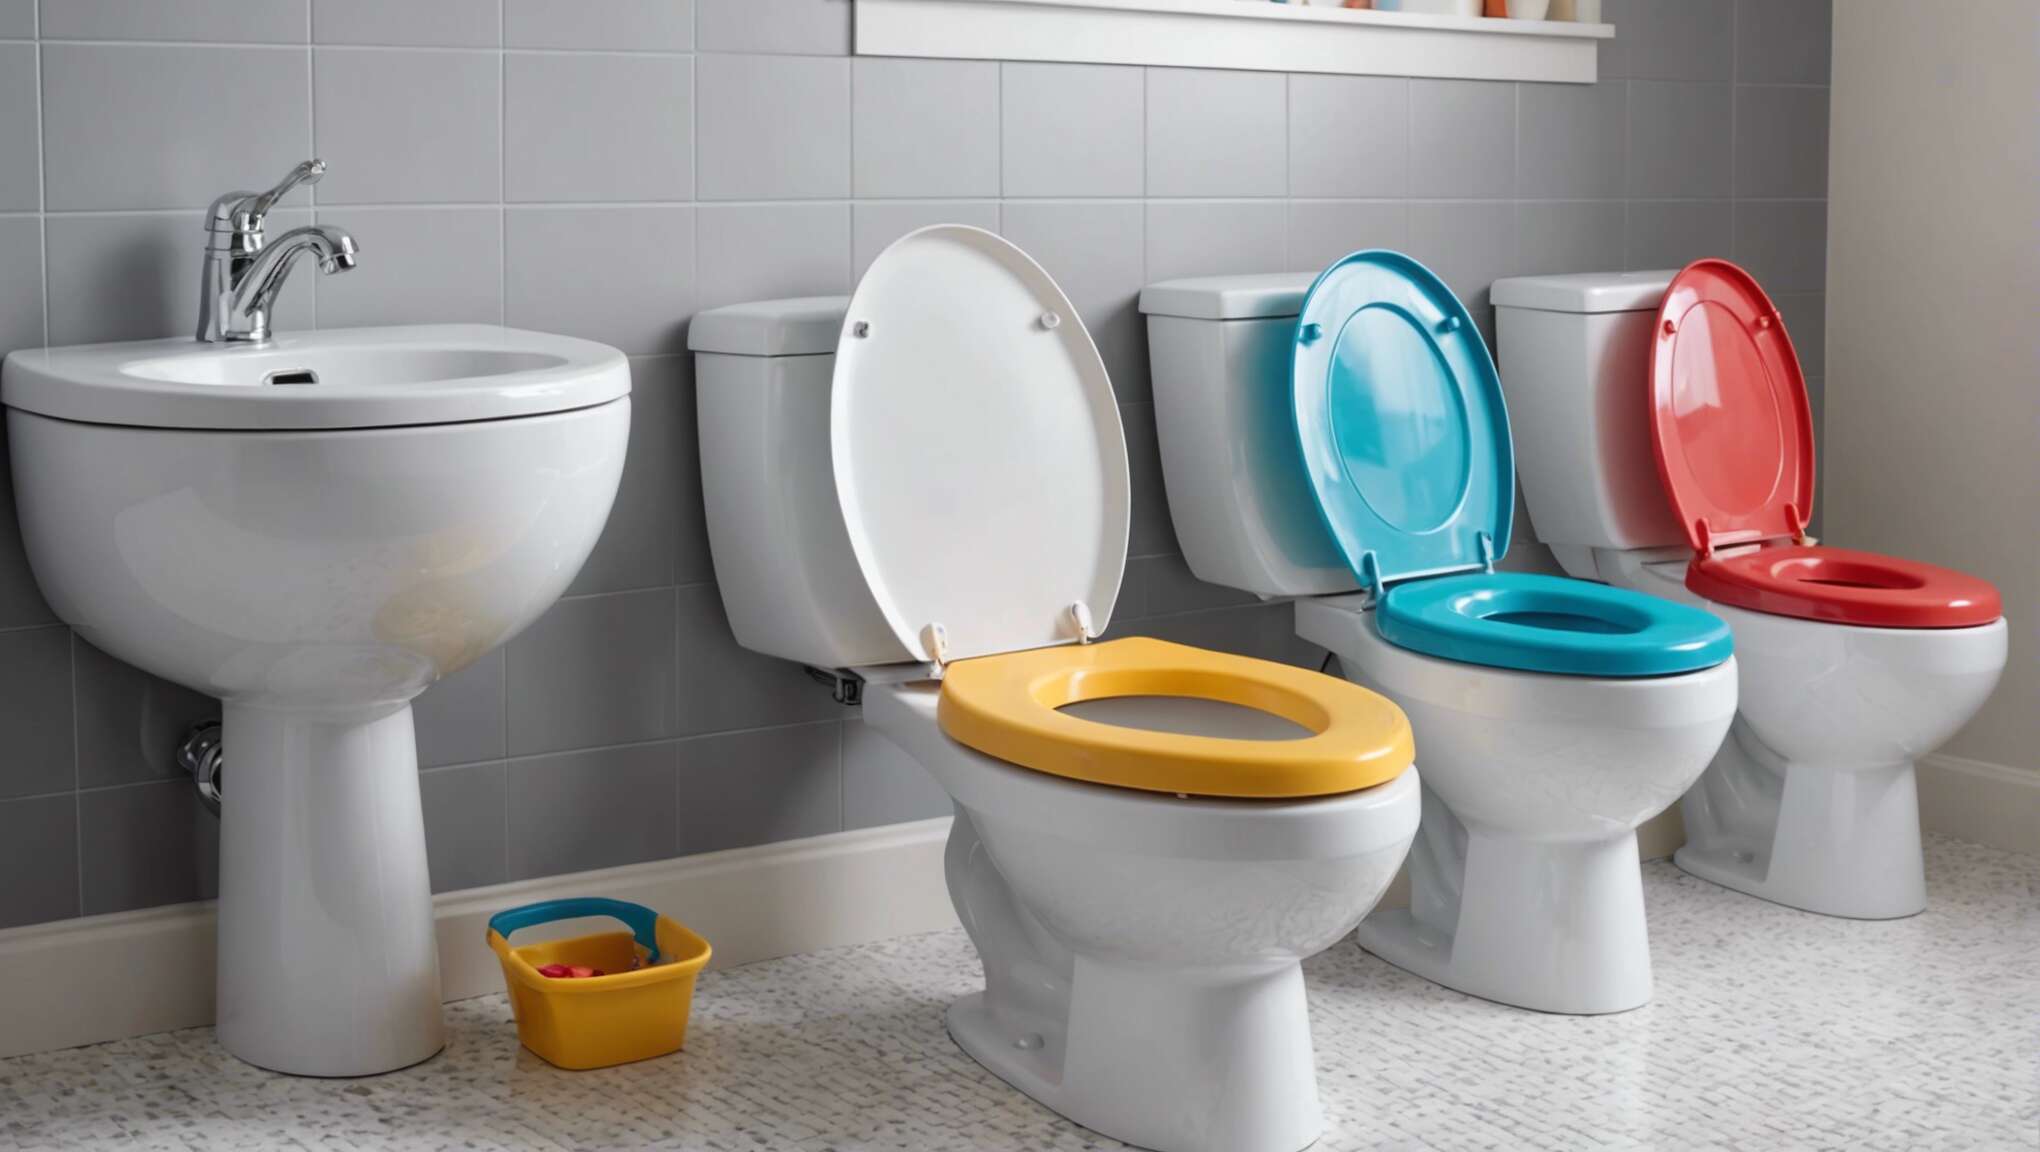 Comment choisir le meilleur réducteur de toilette pour la sécurité et le confort de votre enfant ?